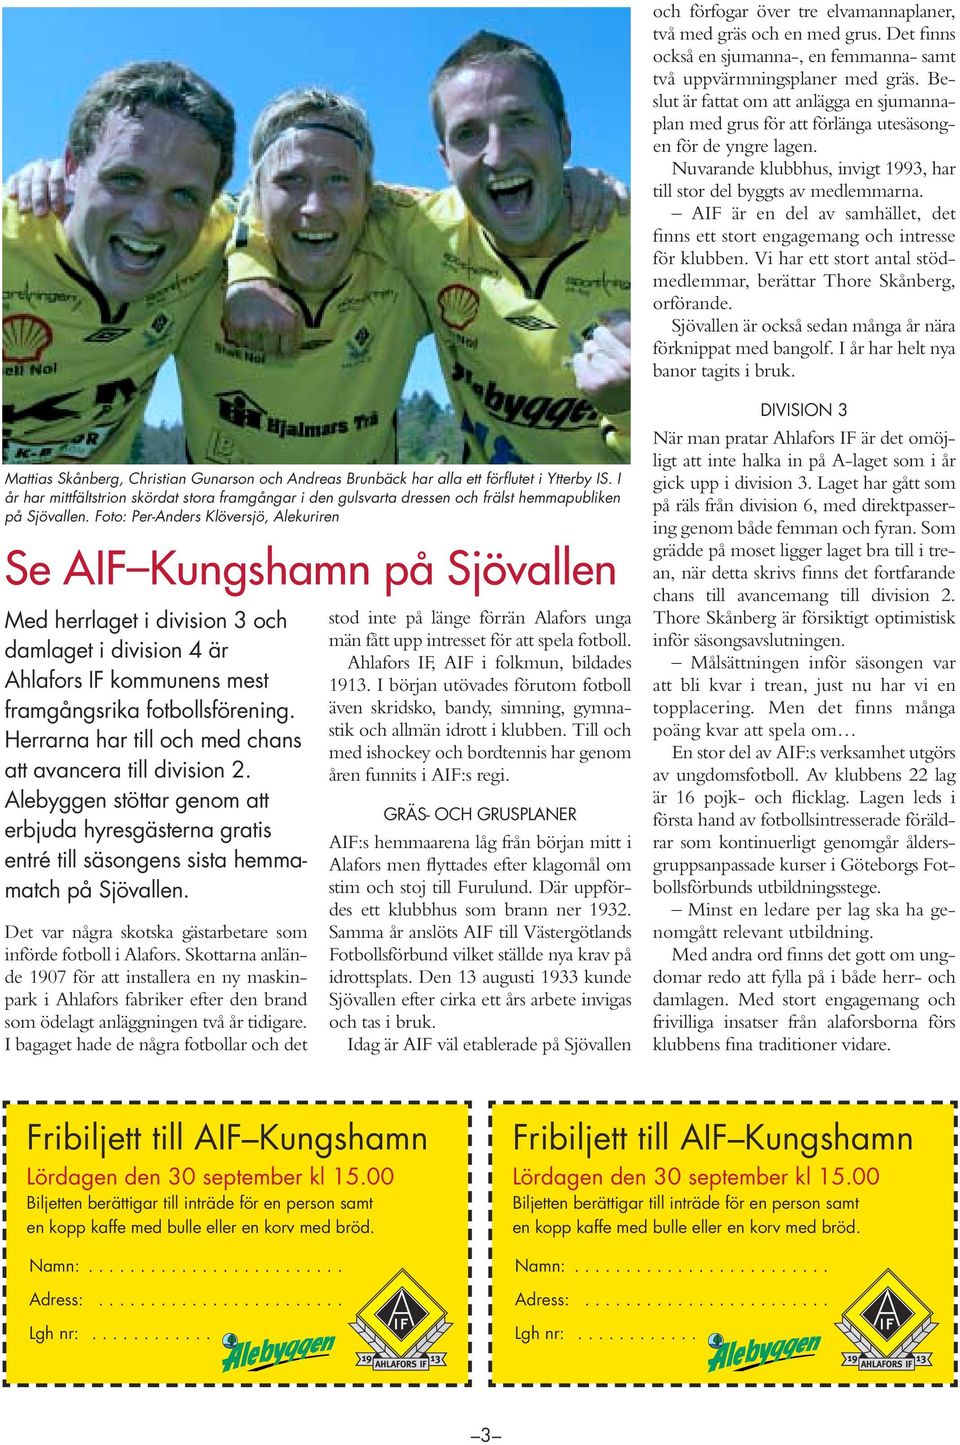 AIF är en del av samhället, det finns ett stort engagemang och intresse för klubben. Vi har ett stort antal stödmedlemmar, berättar Thore Skånberg, orförande.